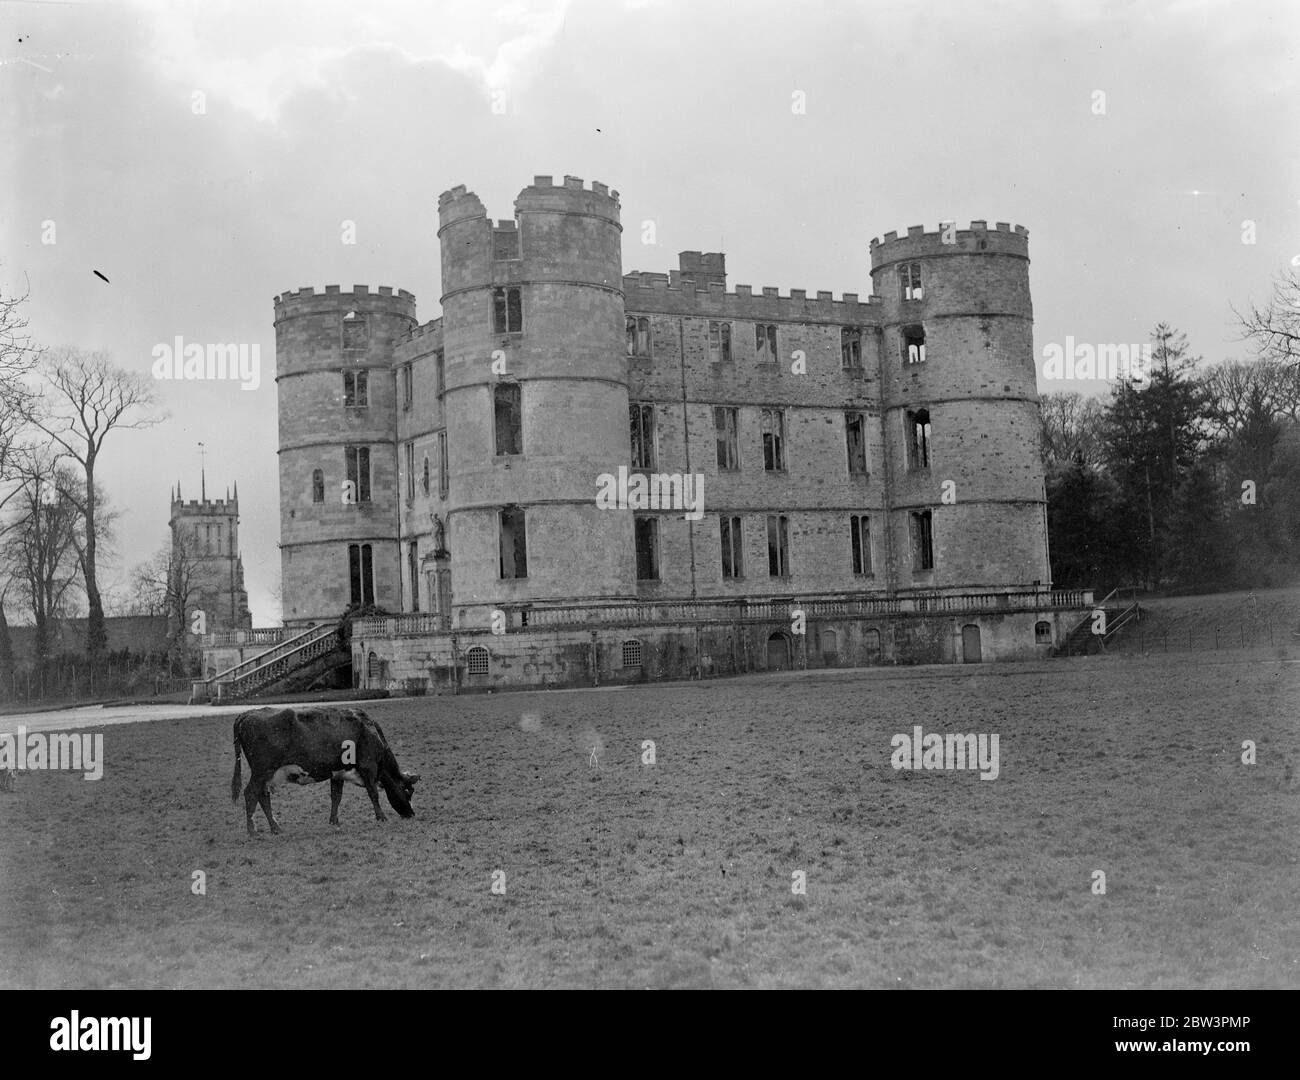 Lulworth, die englische ' Bastille '. Schloss, das im Exil Französisch Monarch zu Tränen reduziert. Mit so großen Ähnlichkeit zu den Schlössern seines geliebten Frankreich, dass die Exil-König Charles X brach in Tränen vor Augen von ihm, Lulworth Castle, in Wareham, Dorset, ist die englische ' Bastille '. Das Aussehen des berühmten Gefängnisses, dessen Sturm 1789 mit der Französischen Revolution begann, ist durch unzählige Drucke bekannt und durch diese wird die Ähnlichkeit der beiden historischen Gebäude sichtbar. Der von der Revolution von 1830 ins Exil geschickt wurde, war Inscri Stockfoto